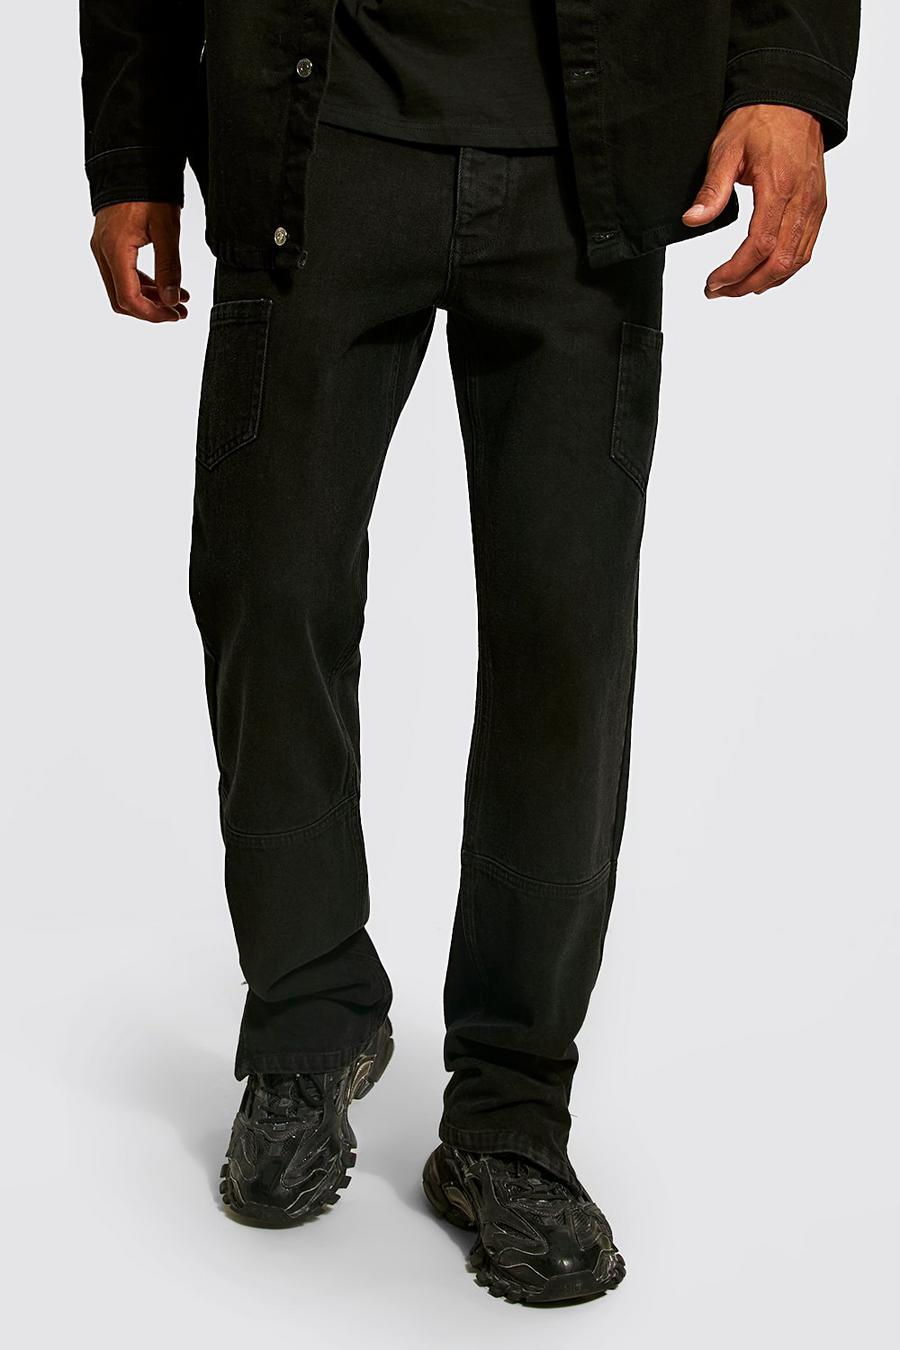 שחור nero ג'ינס בגזרה משוחררת עם רוכסן במכפלת, לגברים גבוהים